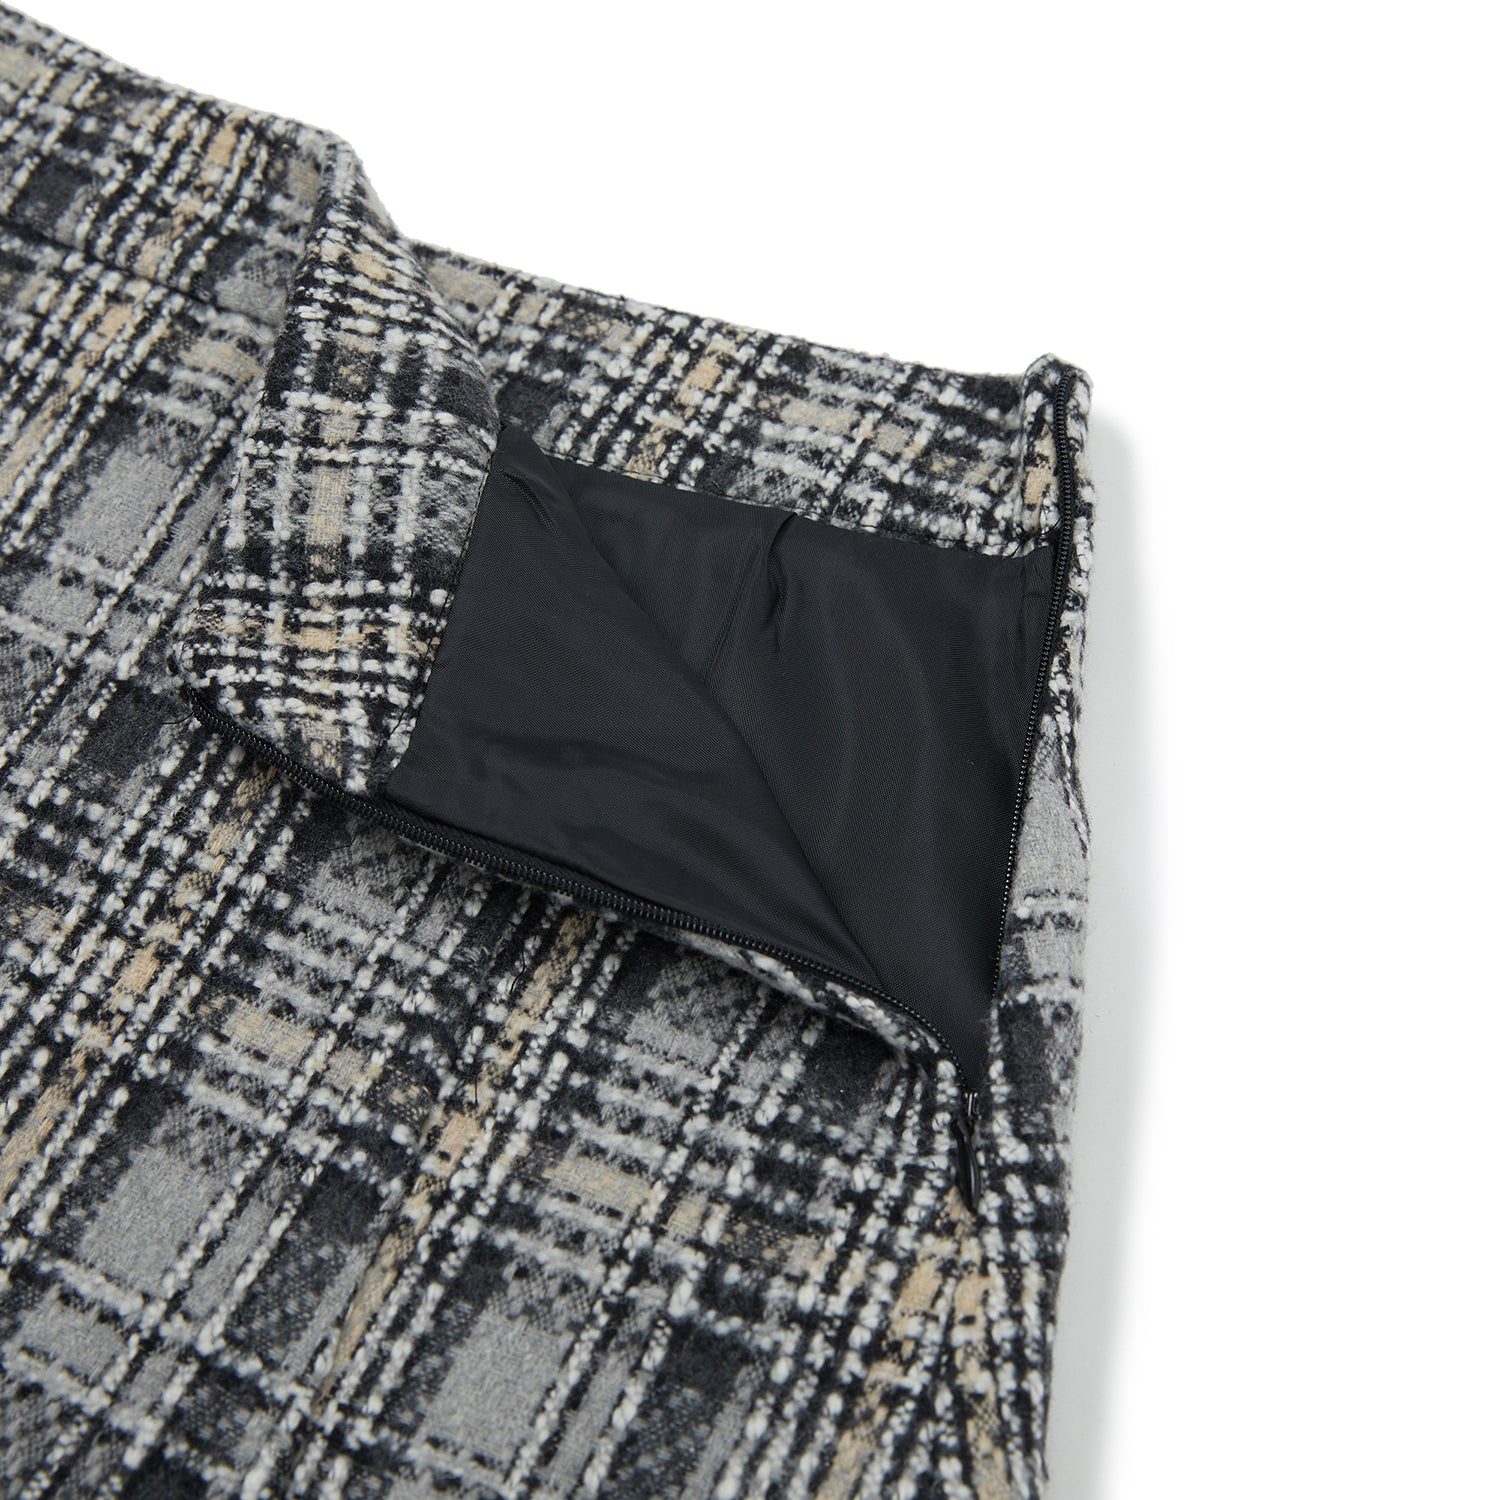 ツイードセットアップミニスカート / Tweed Set-up Mini Skirt [BLACK]